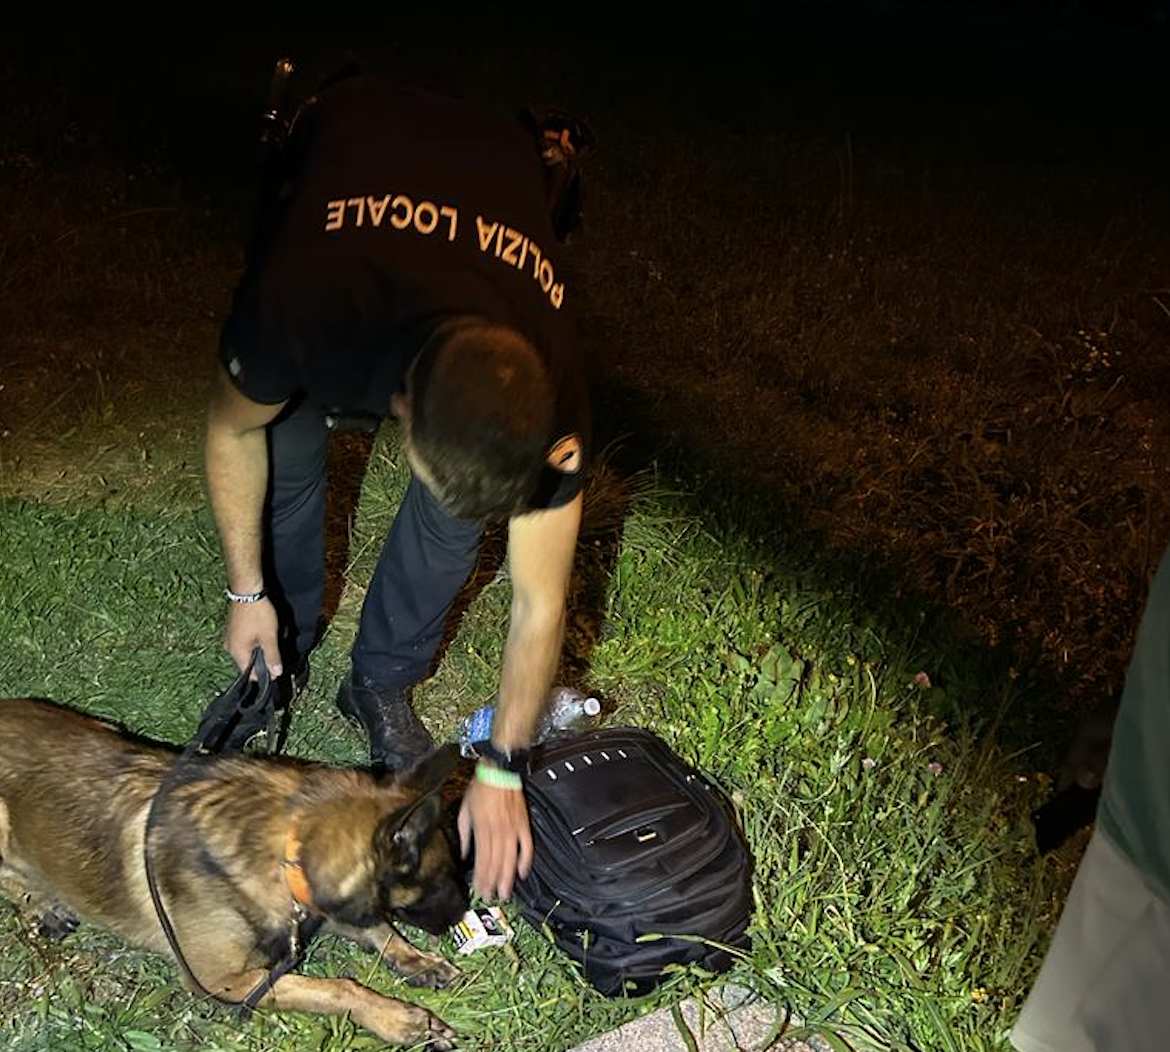 Polizia locale nordest vicentino  (altre notizie sulla sua attività, ndr) , supportata dal cane antidroga Ronnie